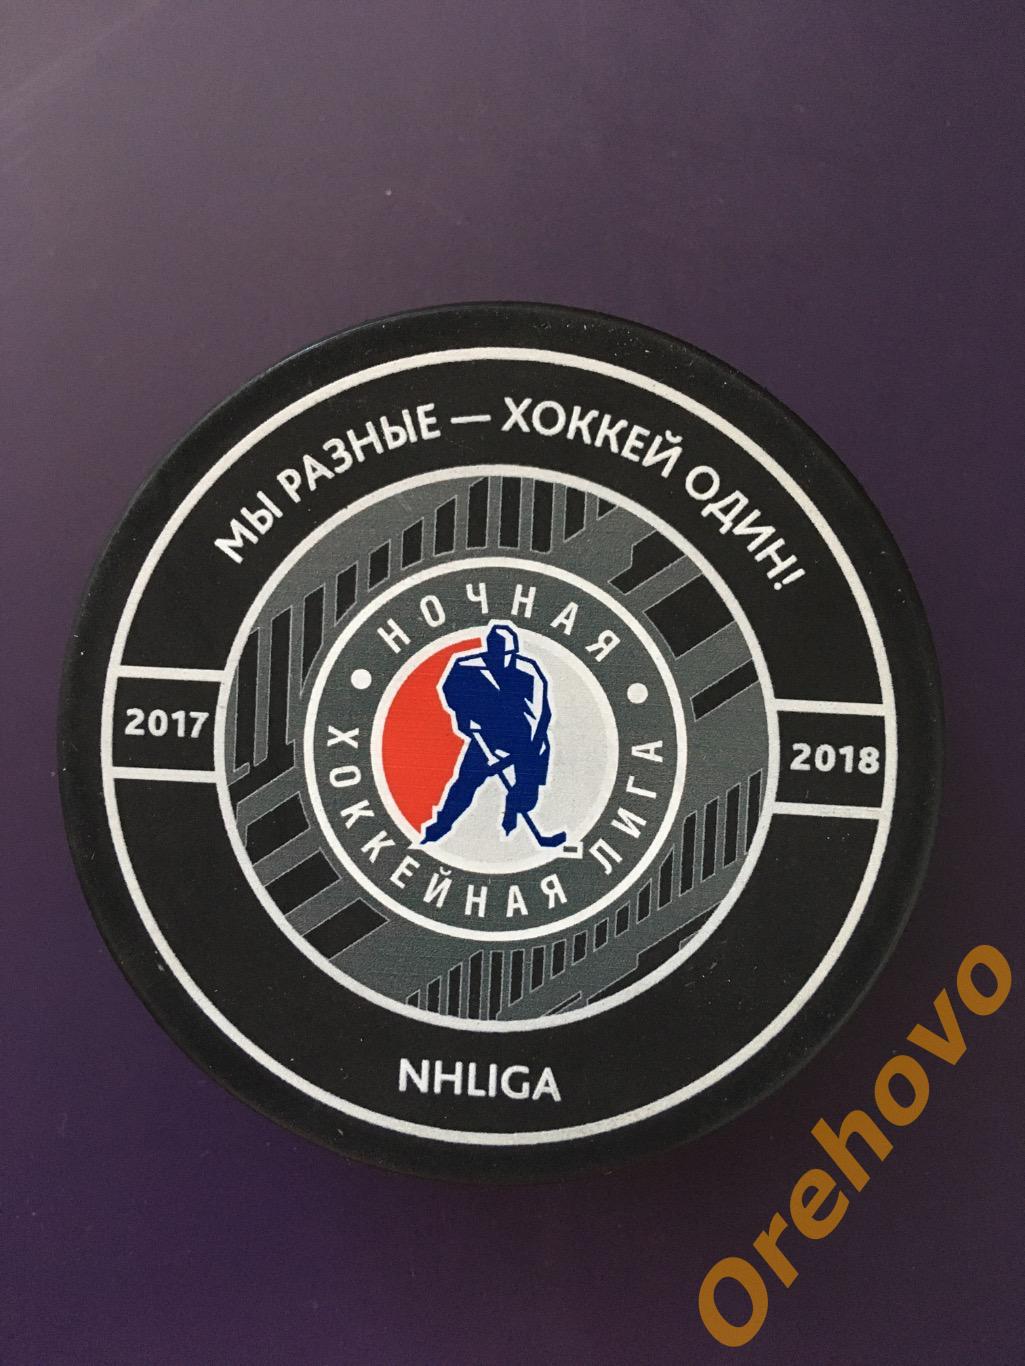 Шайба хоккей Финал VII Всероссийского фестиваля по хоккею Ночная Лига Сочи 2018 1